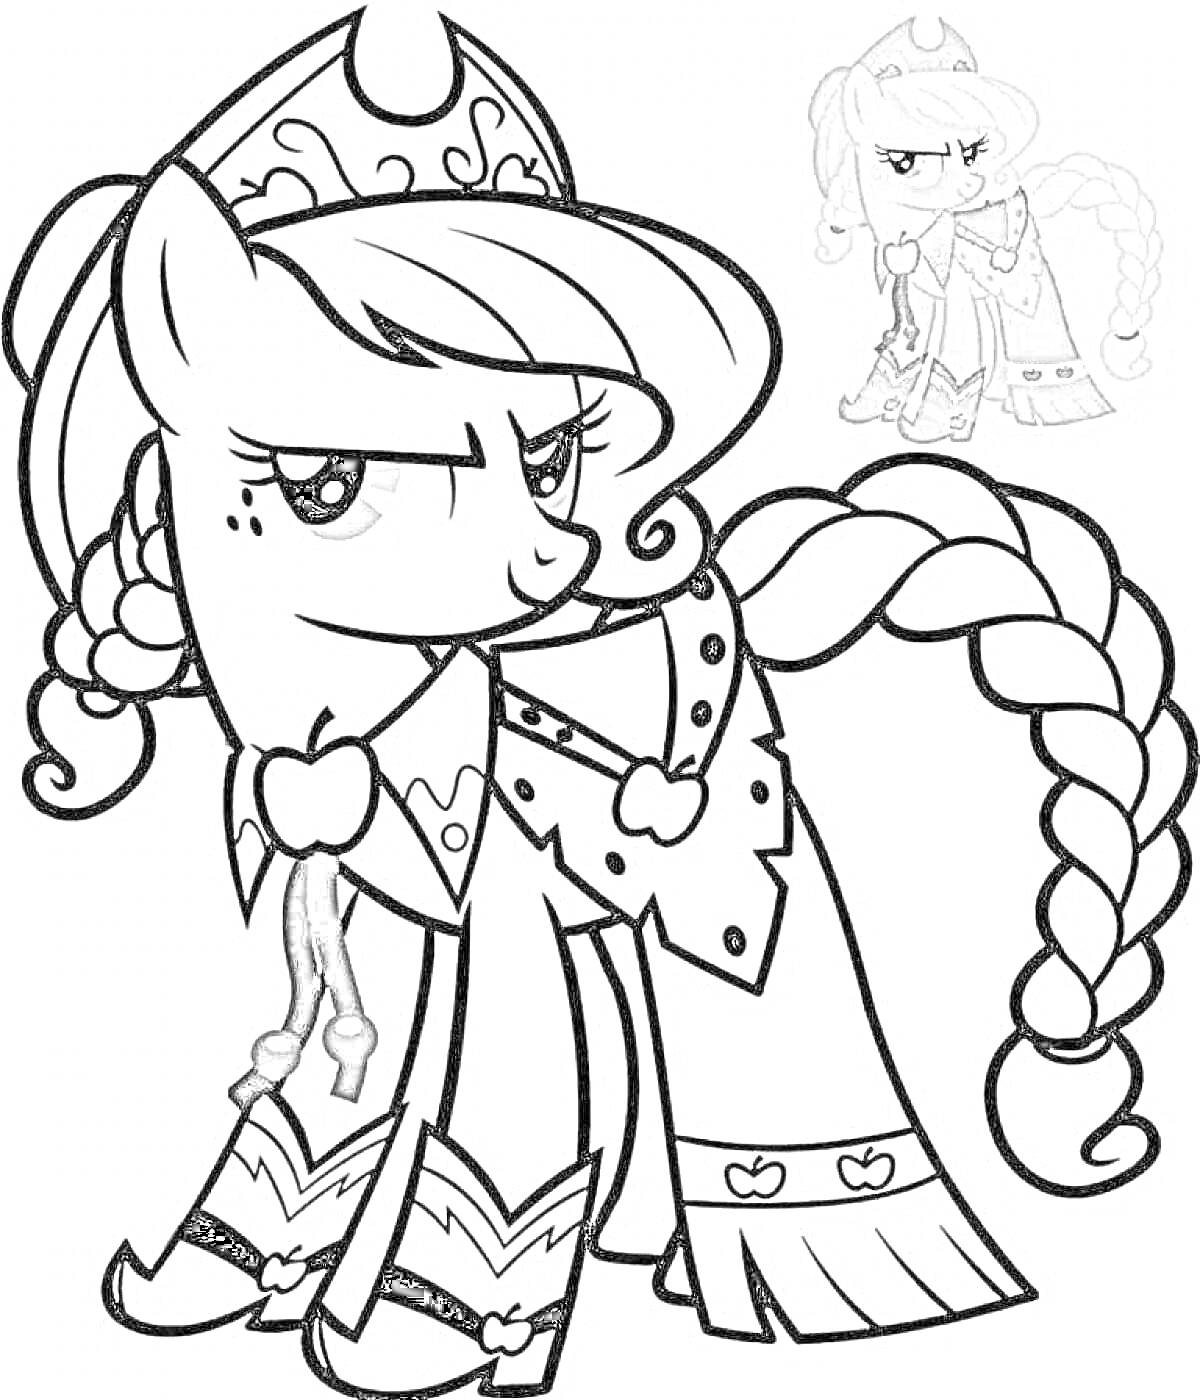 Раскраска Пони Эпплджек в короне и праздничном наряде с заплетенной косой и бантиками